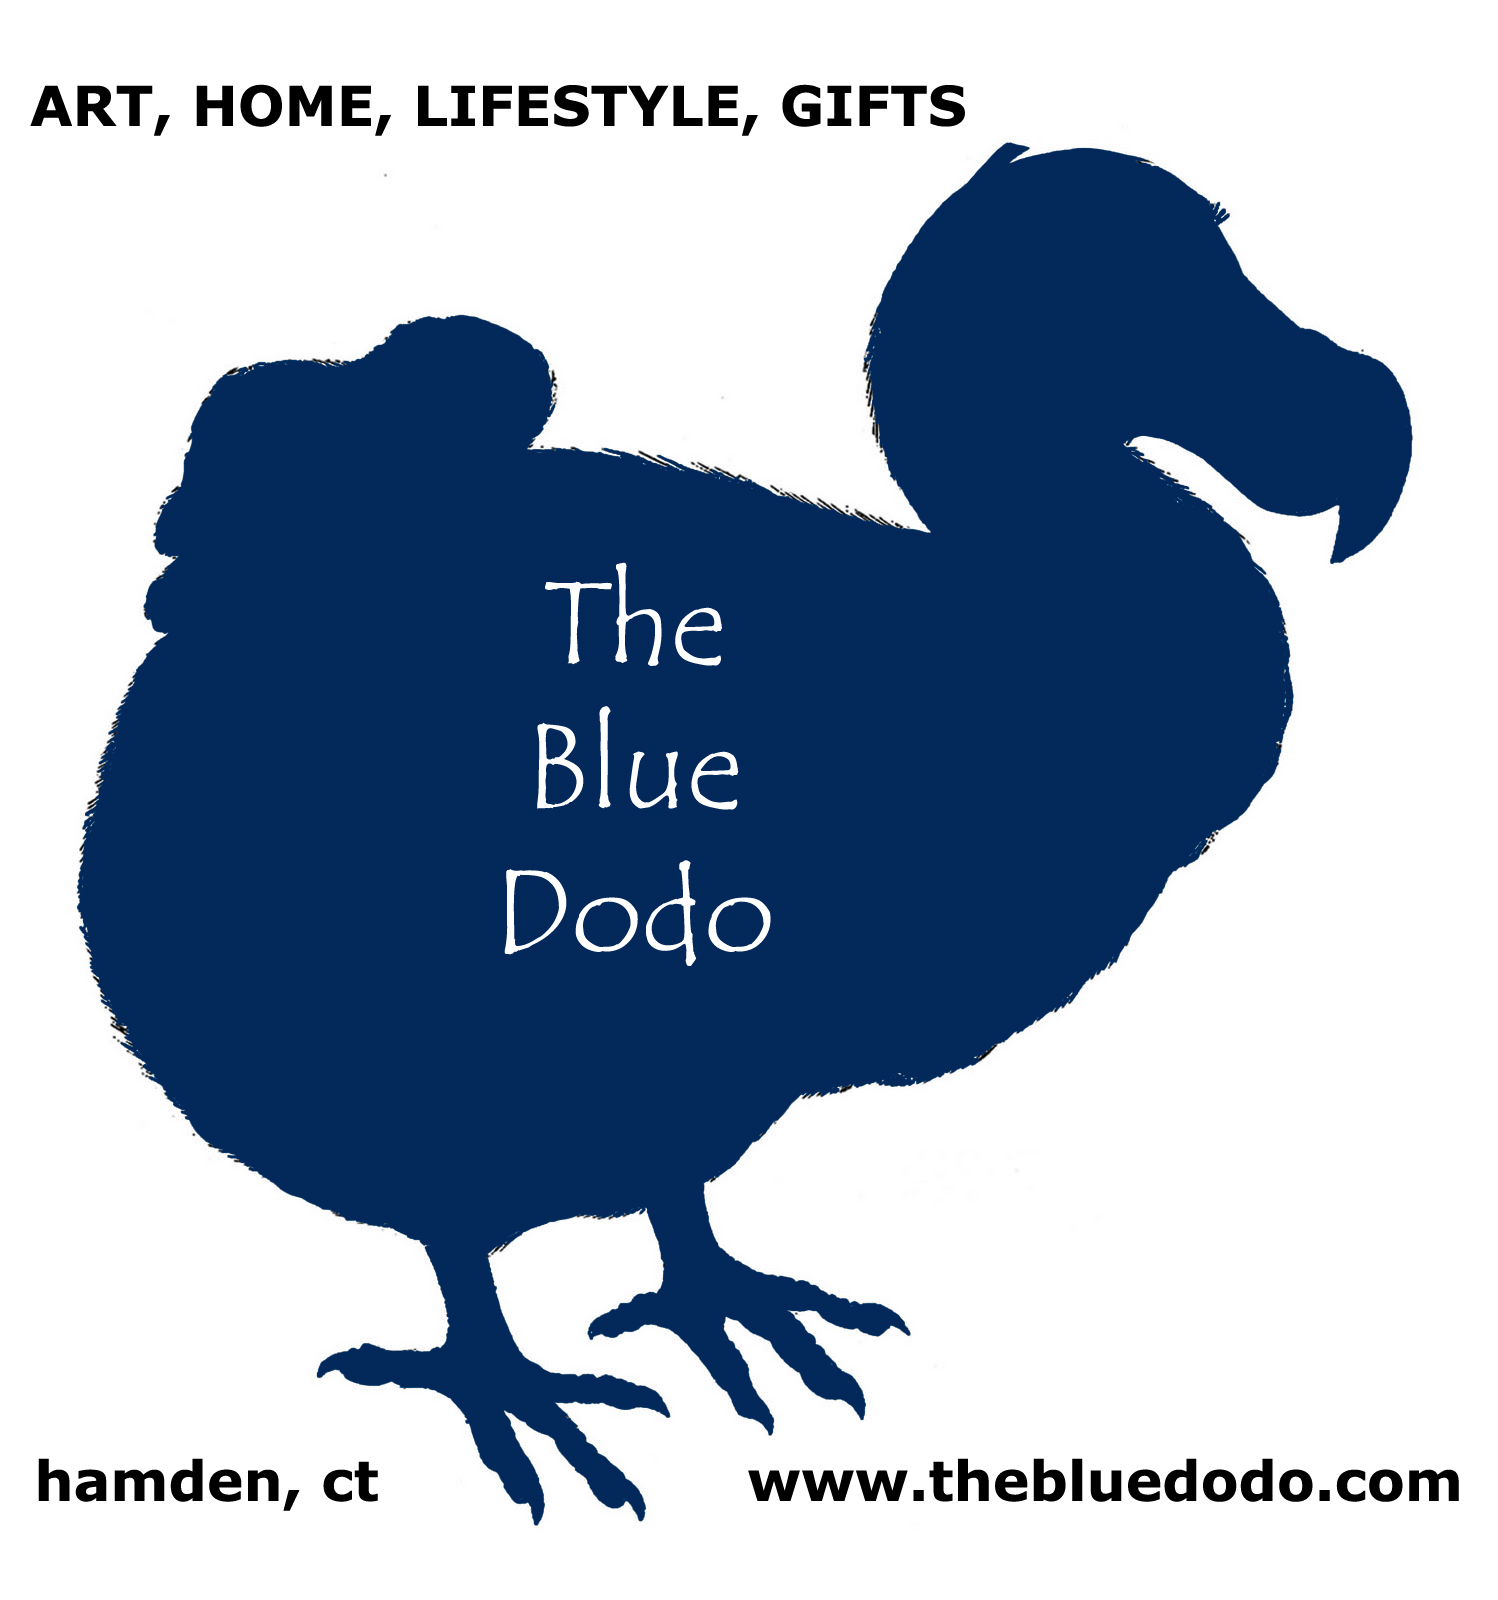 The Blue Dodo